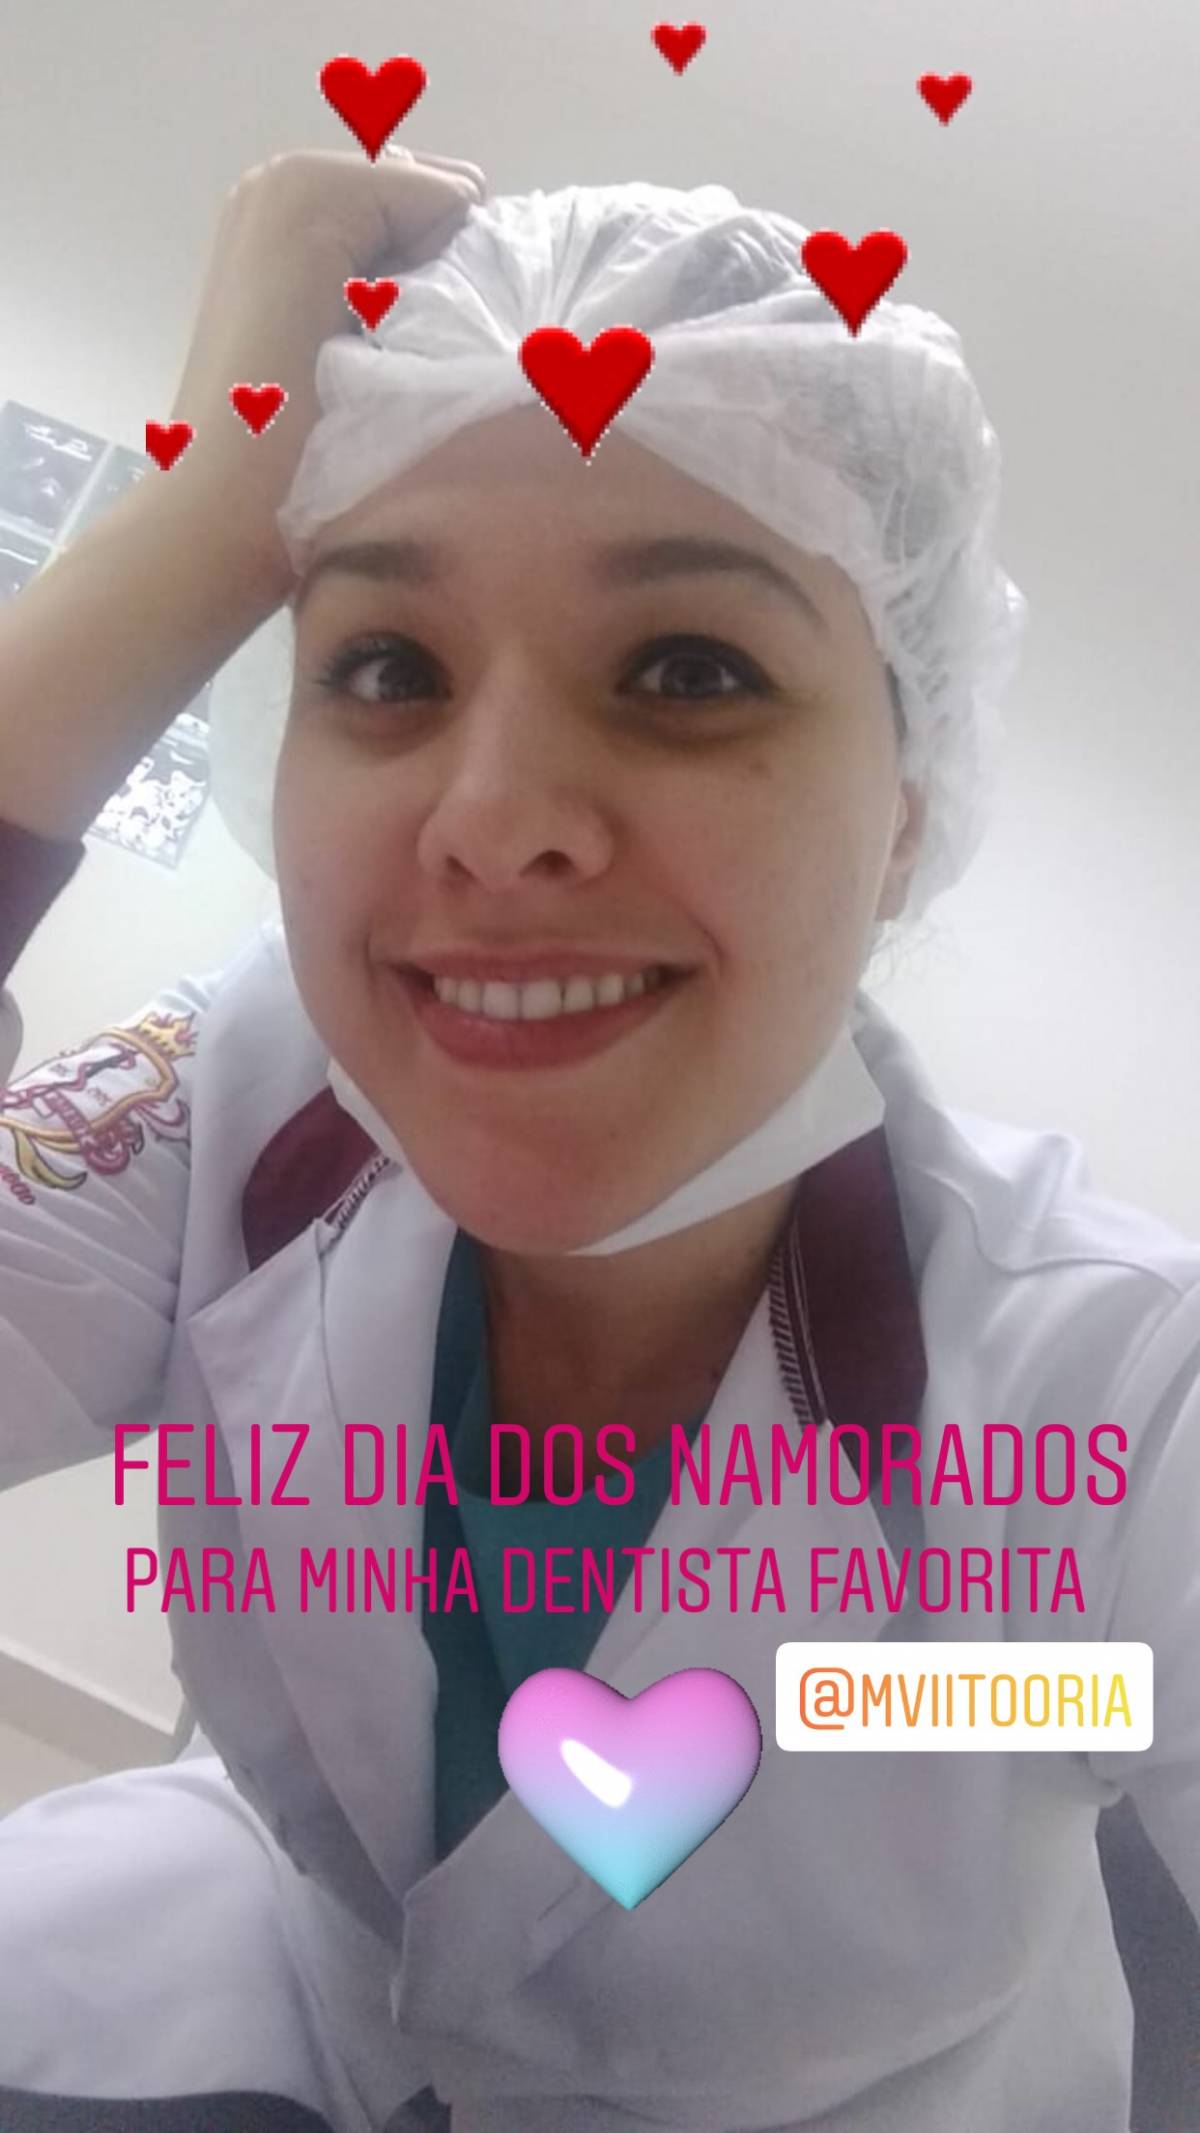 Maria Vitória Alves - Entroncamento - Manicure e Pedicure